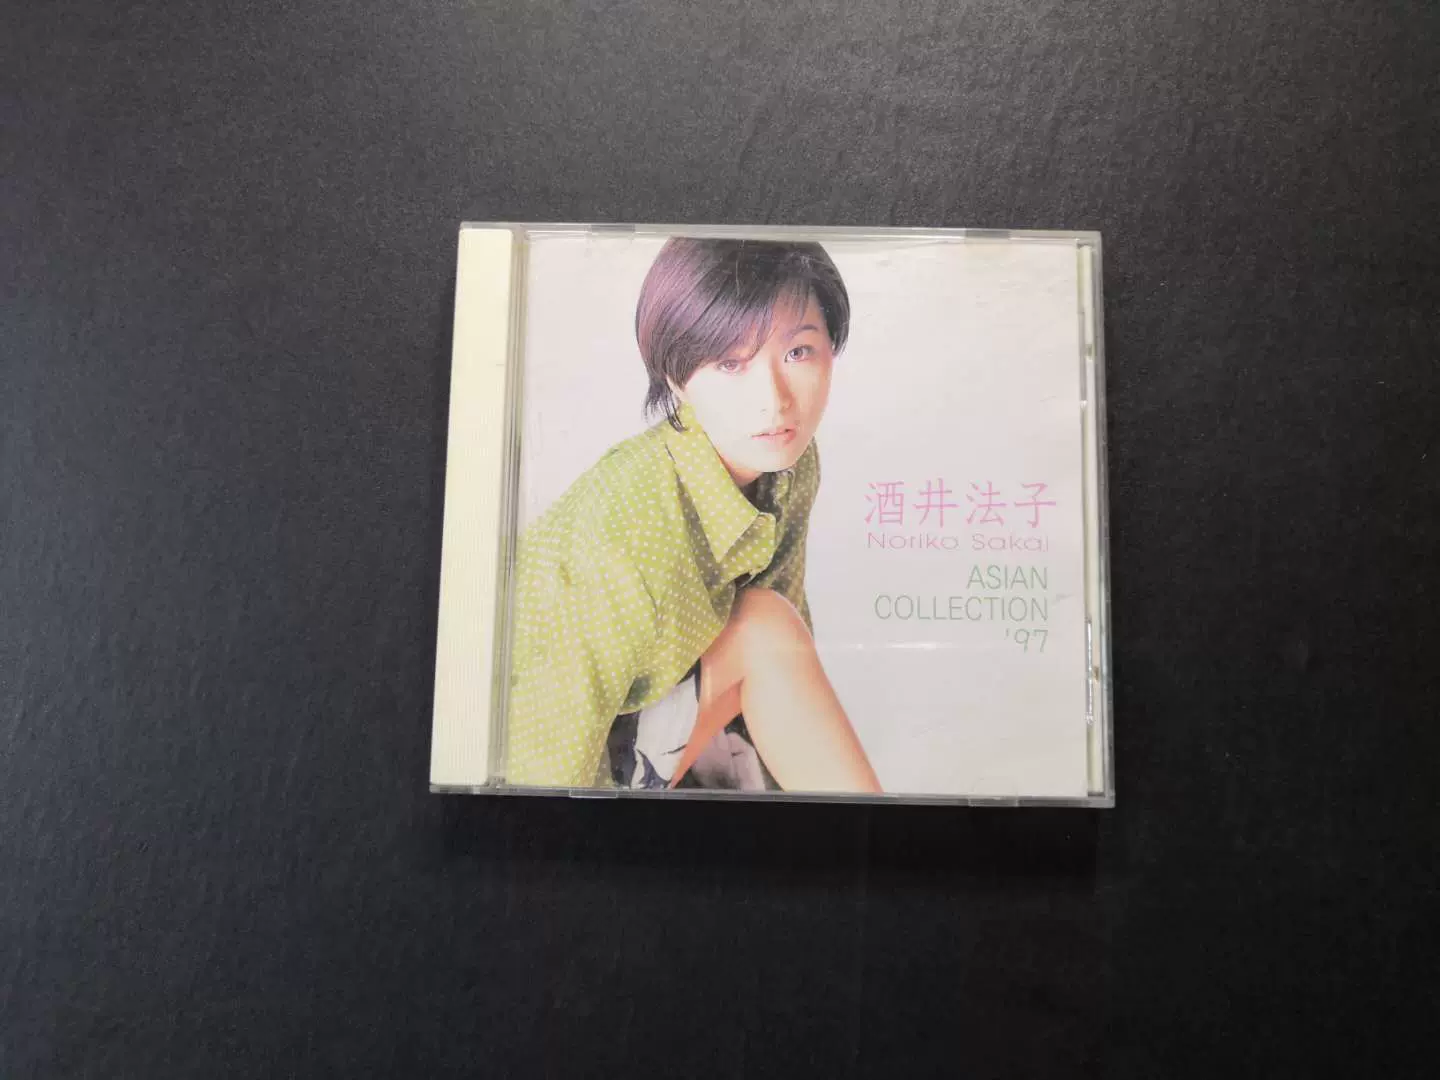 酒井法子Asian collection 97 CD 正版-Taobao